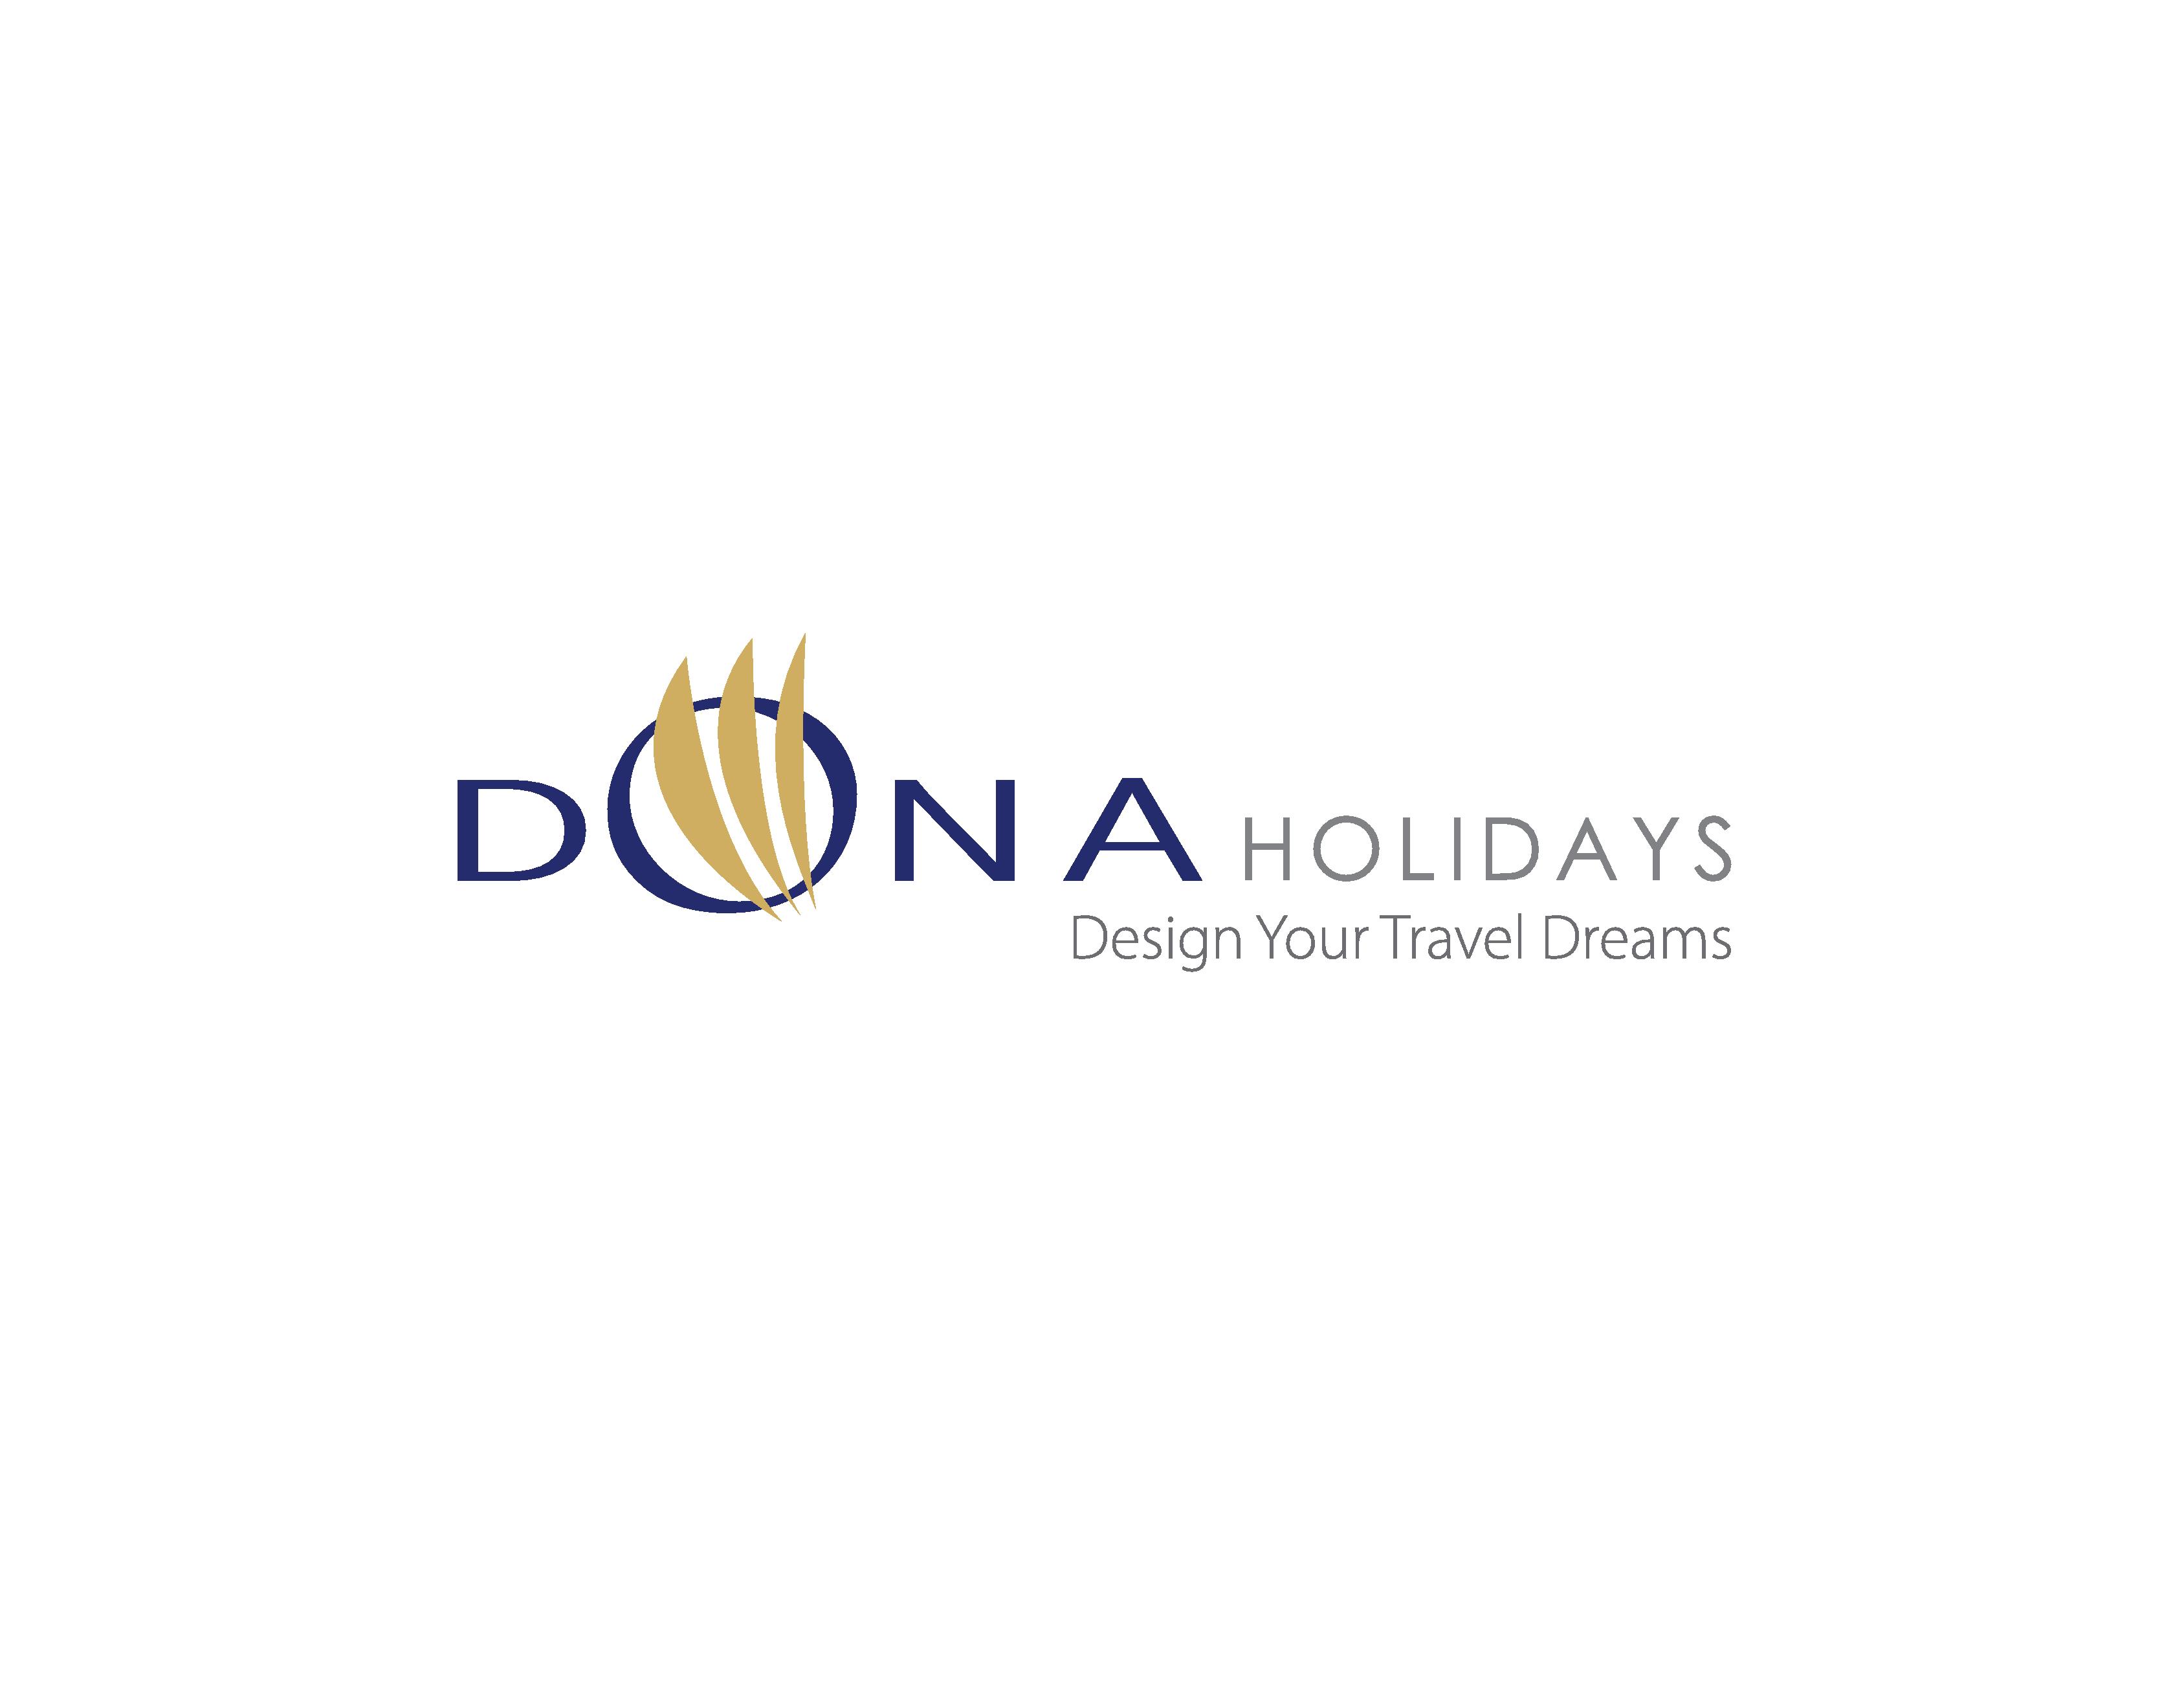 Dona Holidays